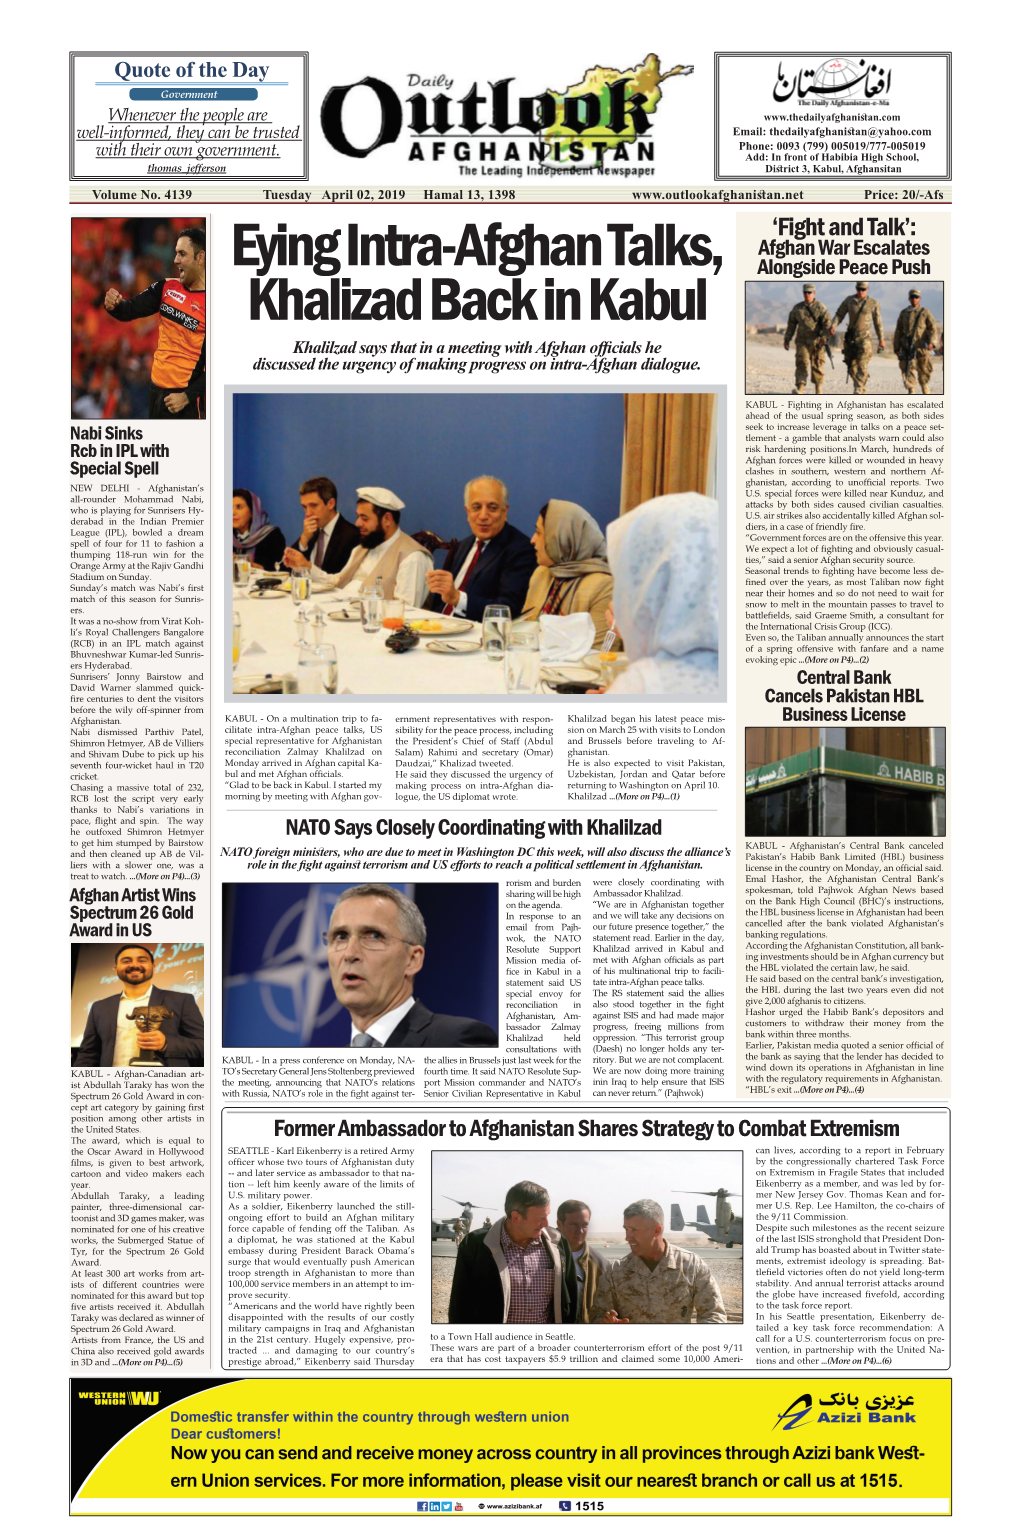 Eying Intra-Afghan Talks, Khalizad Back in Kabul